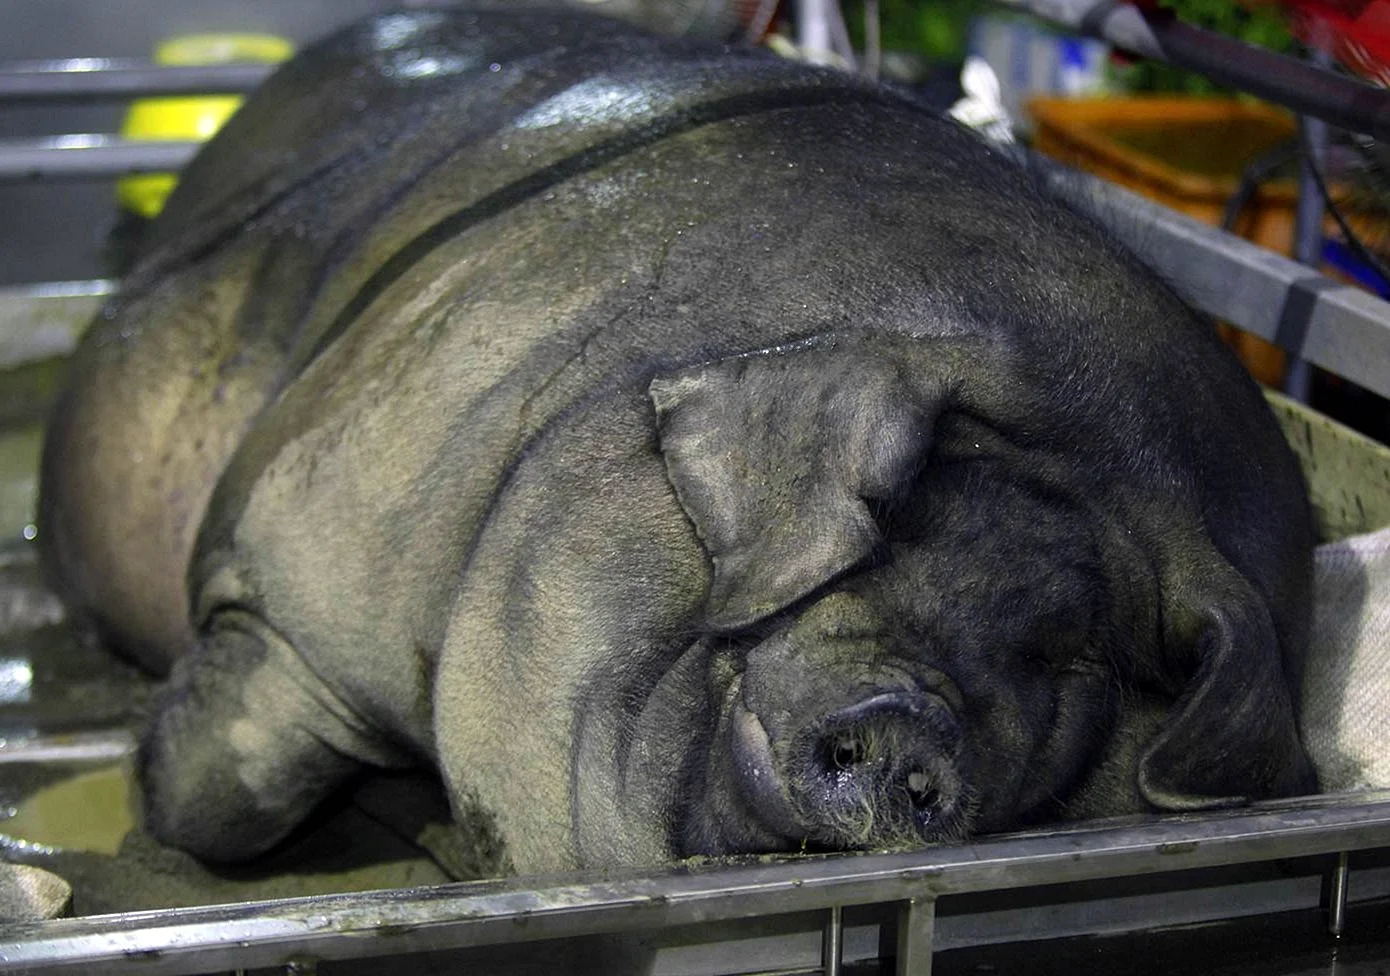 Самая большая свинья в мире